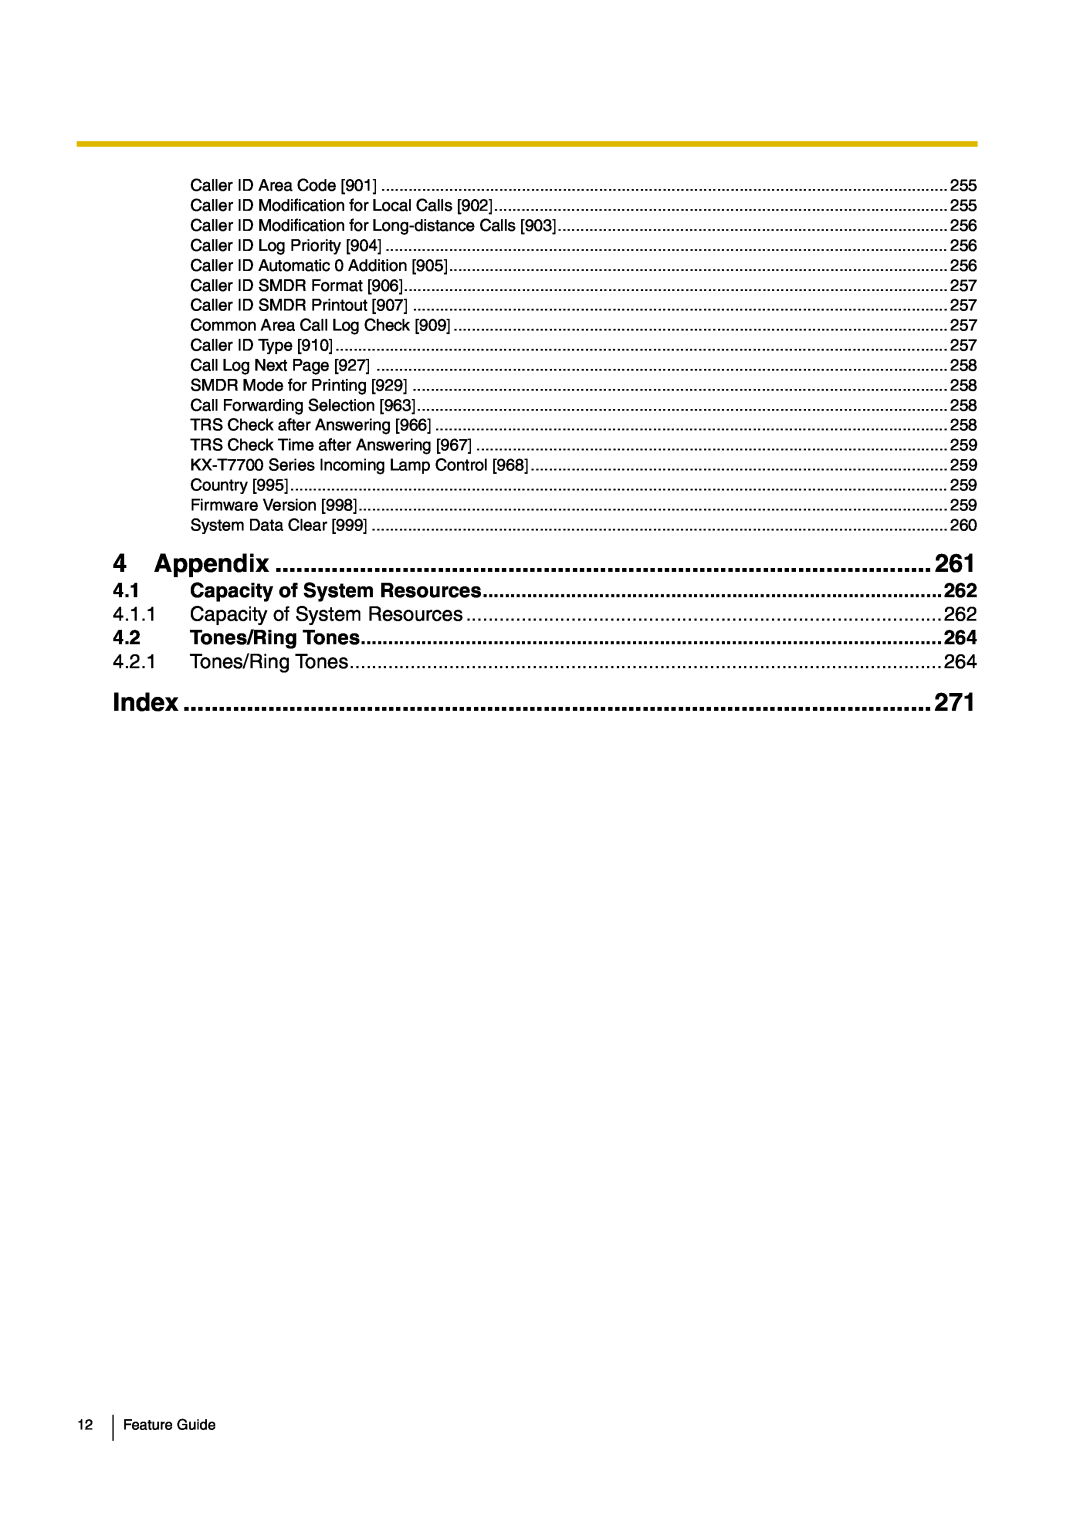 Panasonic kx-tea308 manual Appendix, Index, Tones/Ring Tones 